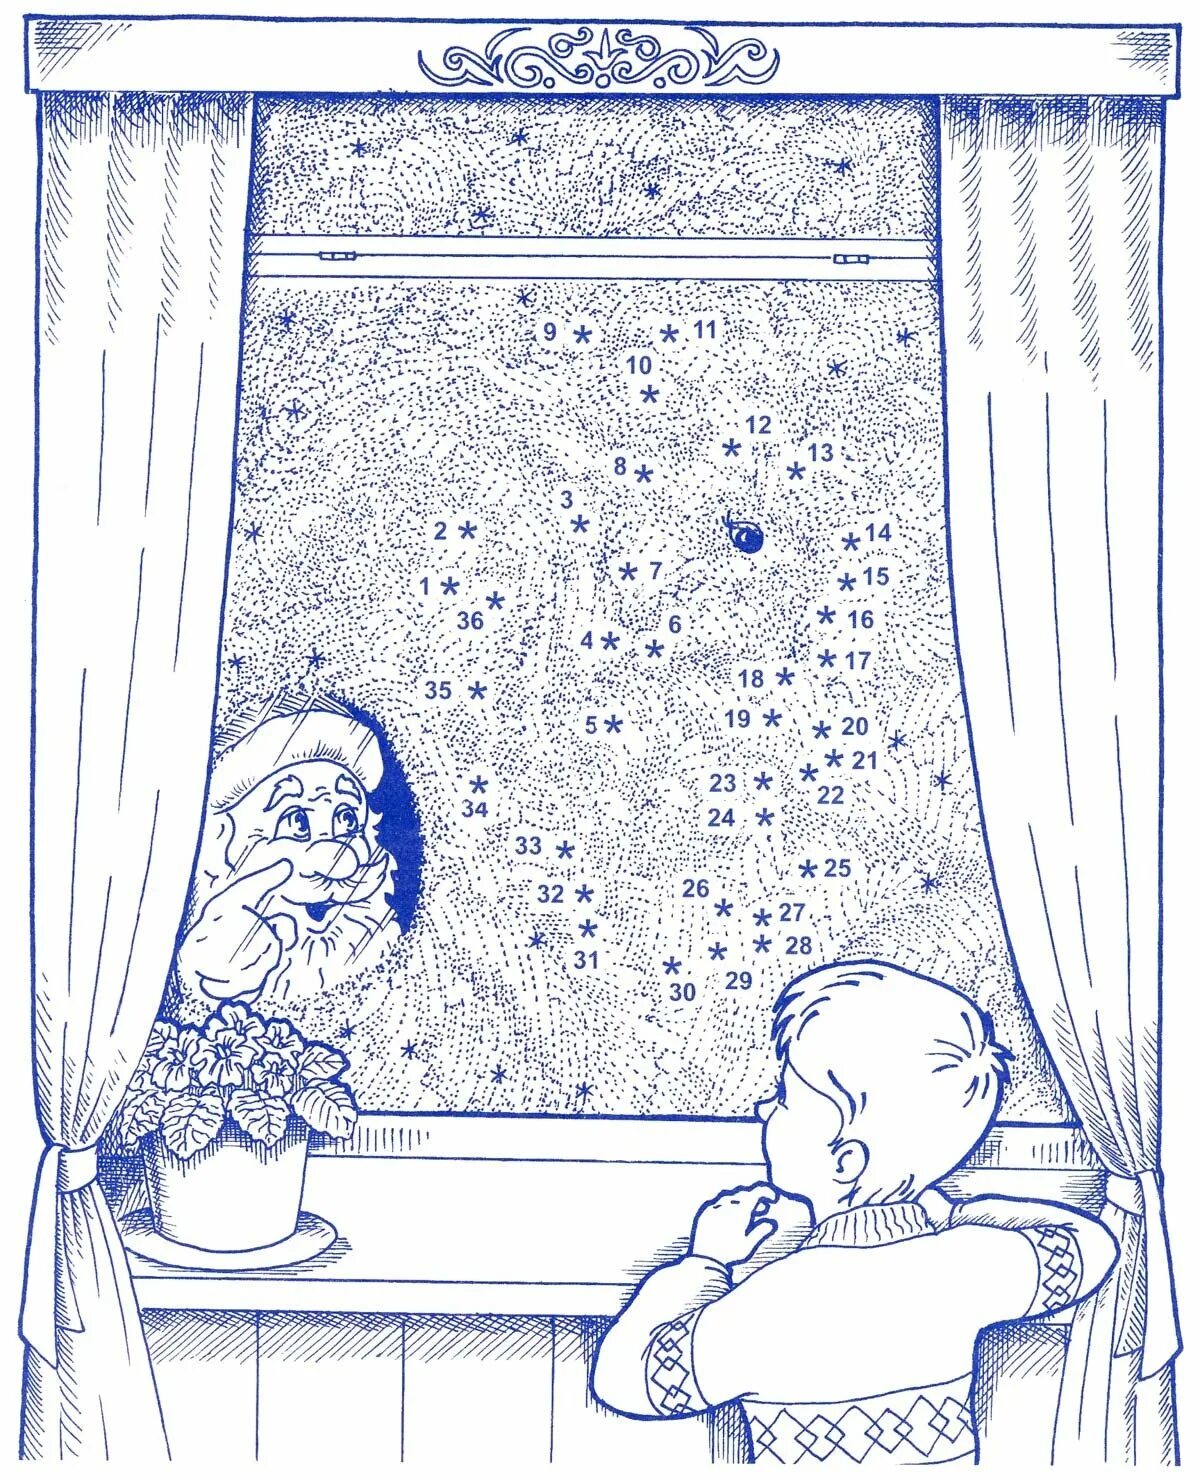 Frost patterns on window #4